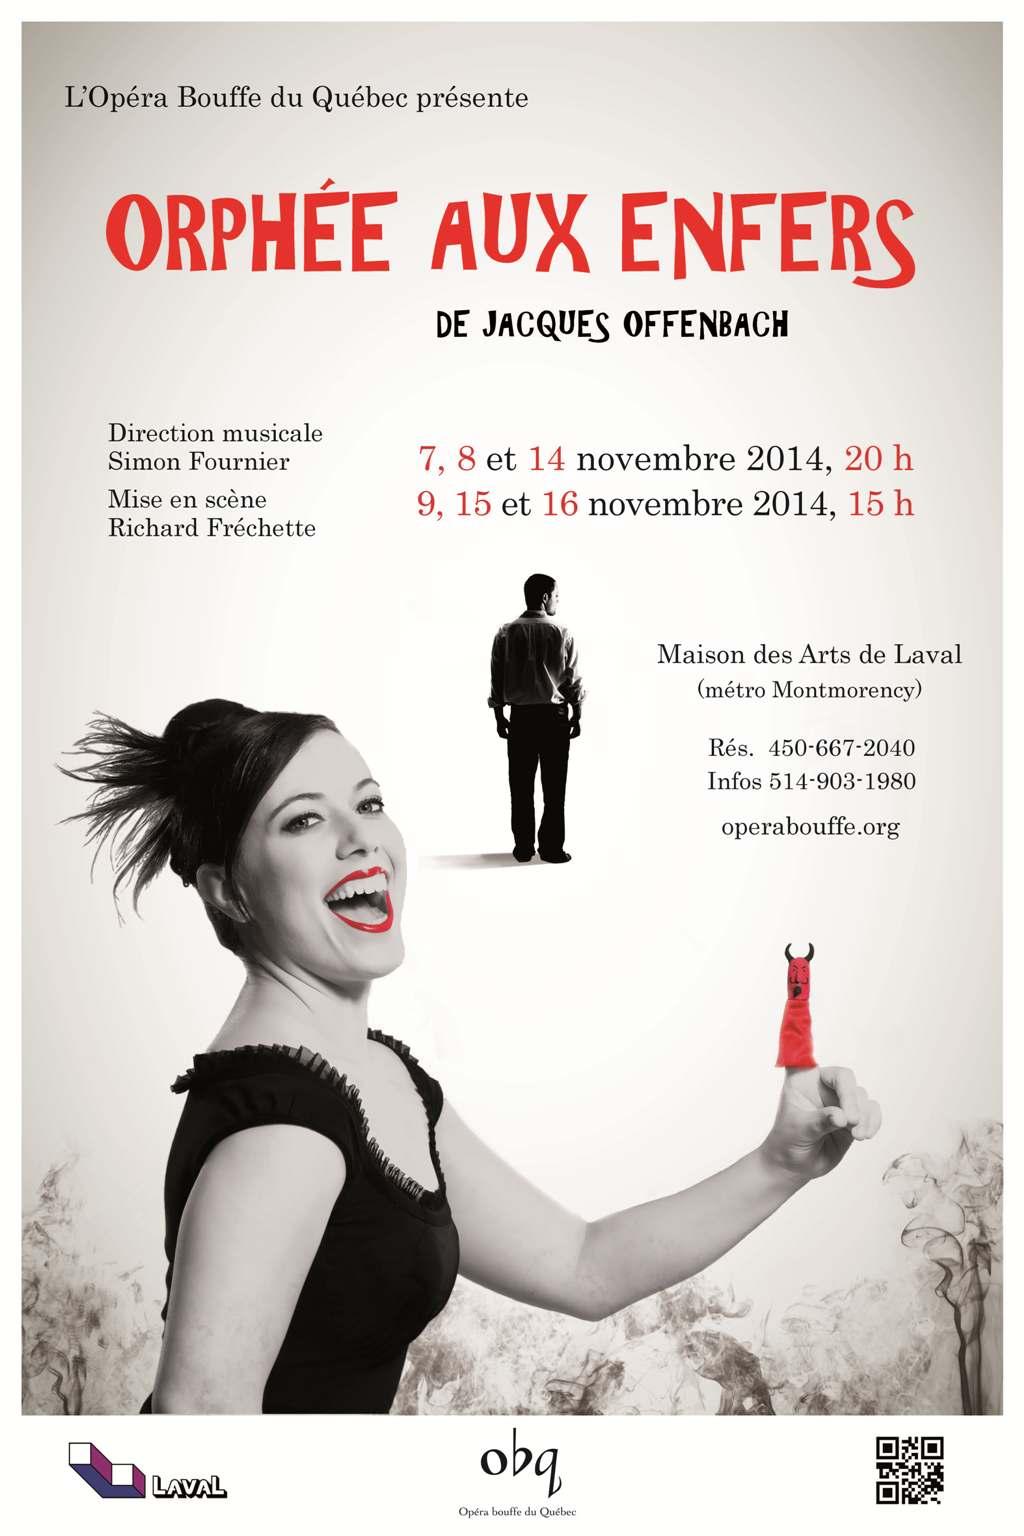 Orphée aux enfers de Jacques Offenbach par l’Opéra bouffe du Québec et le sourire de la voix…de Chantal Lambert